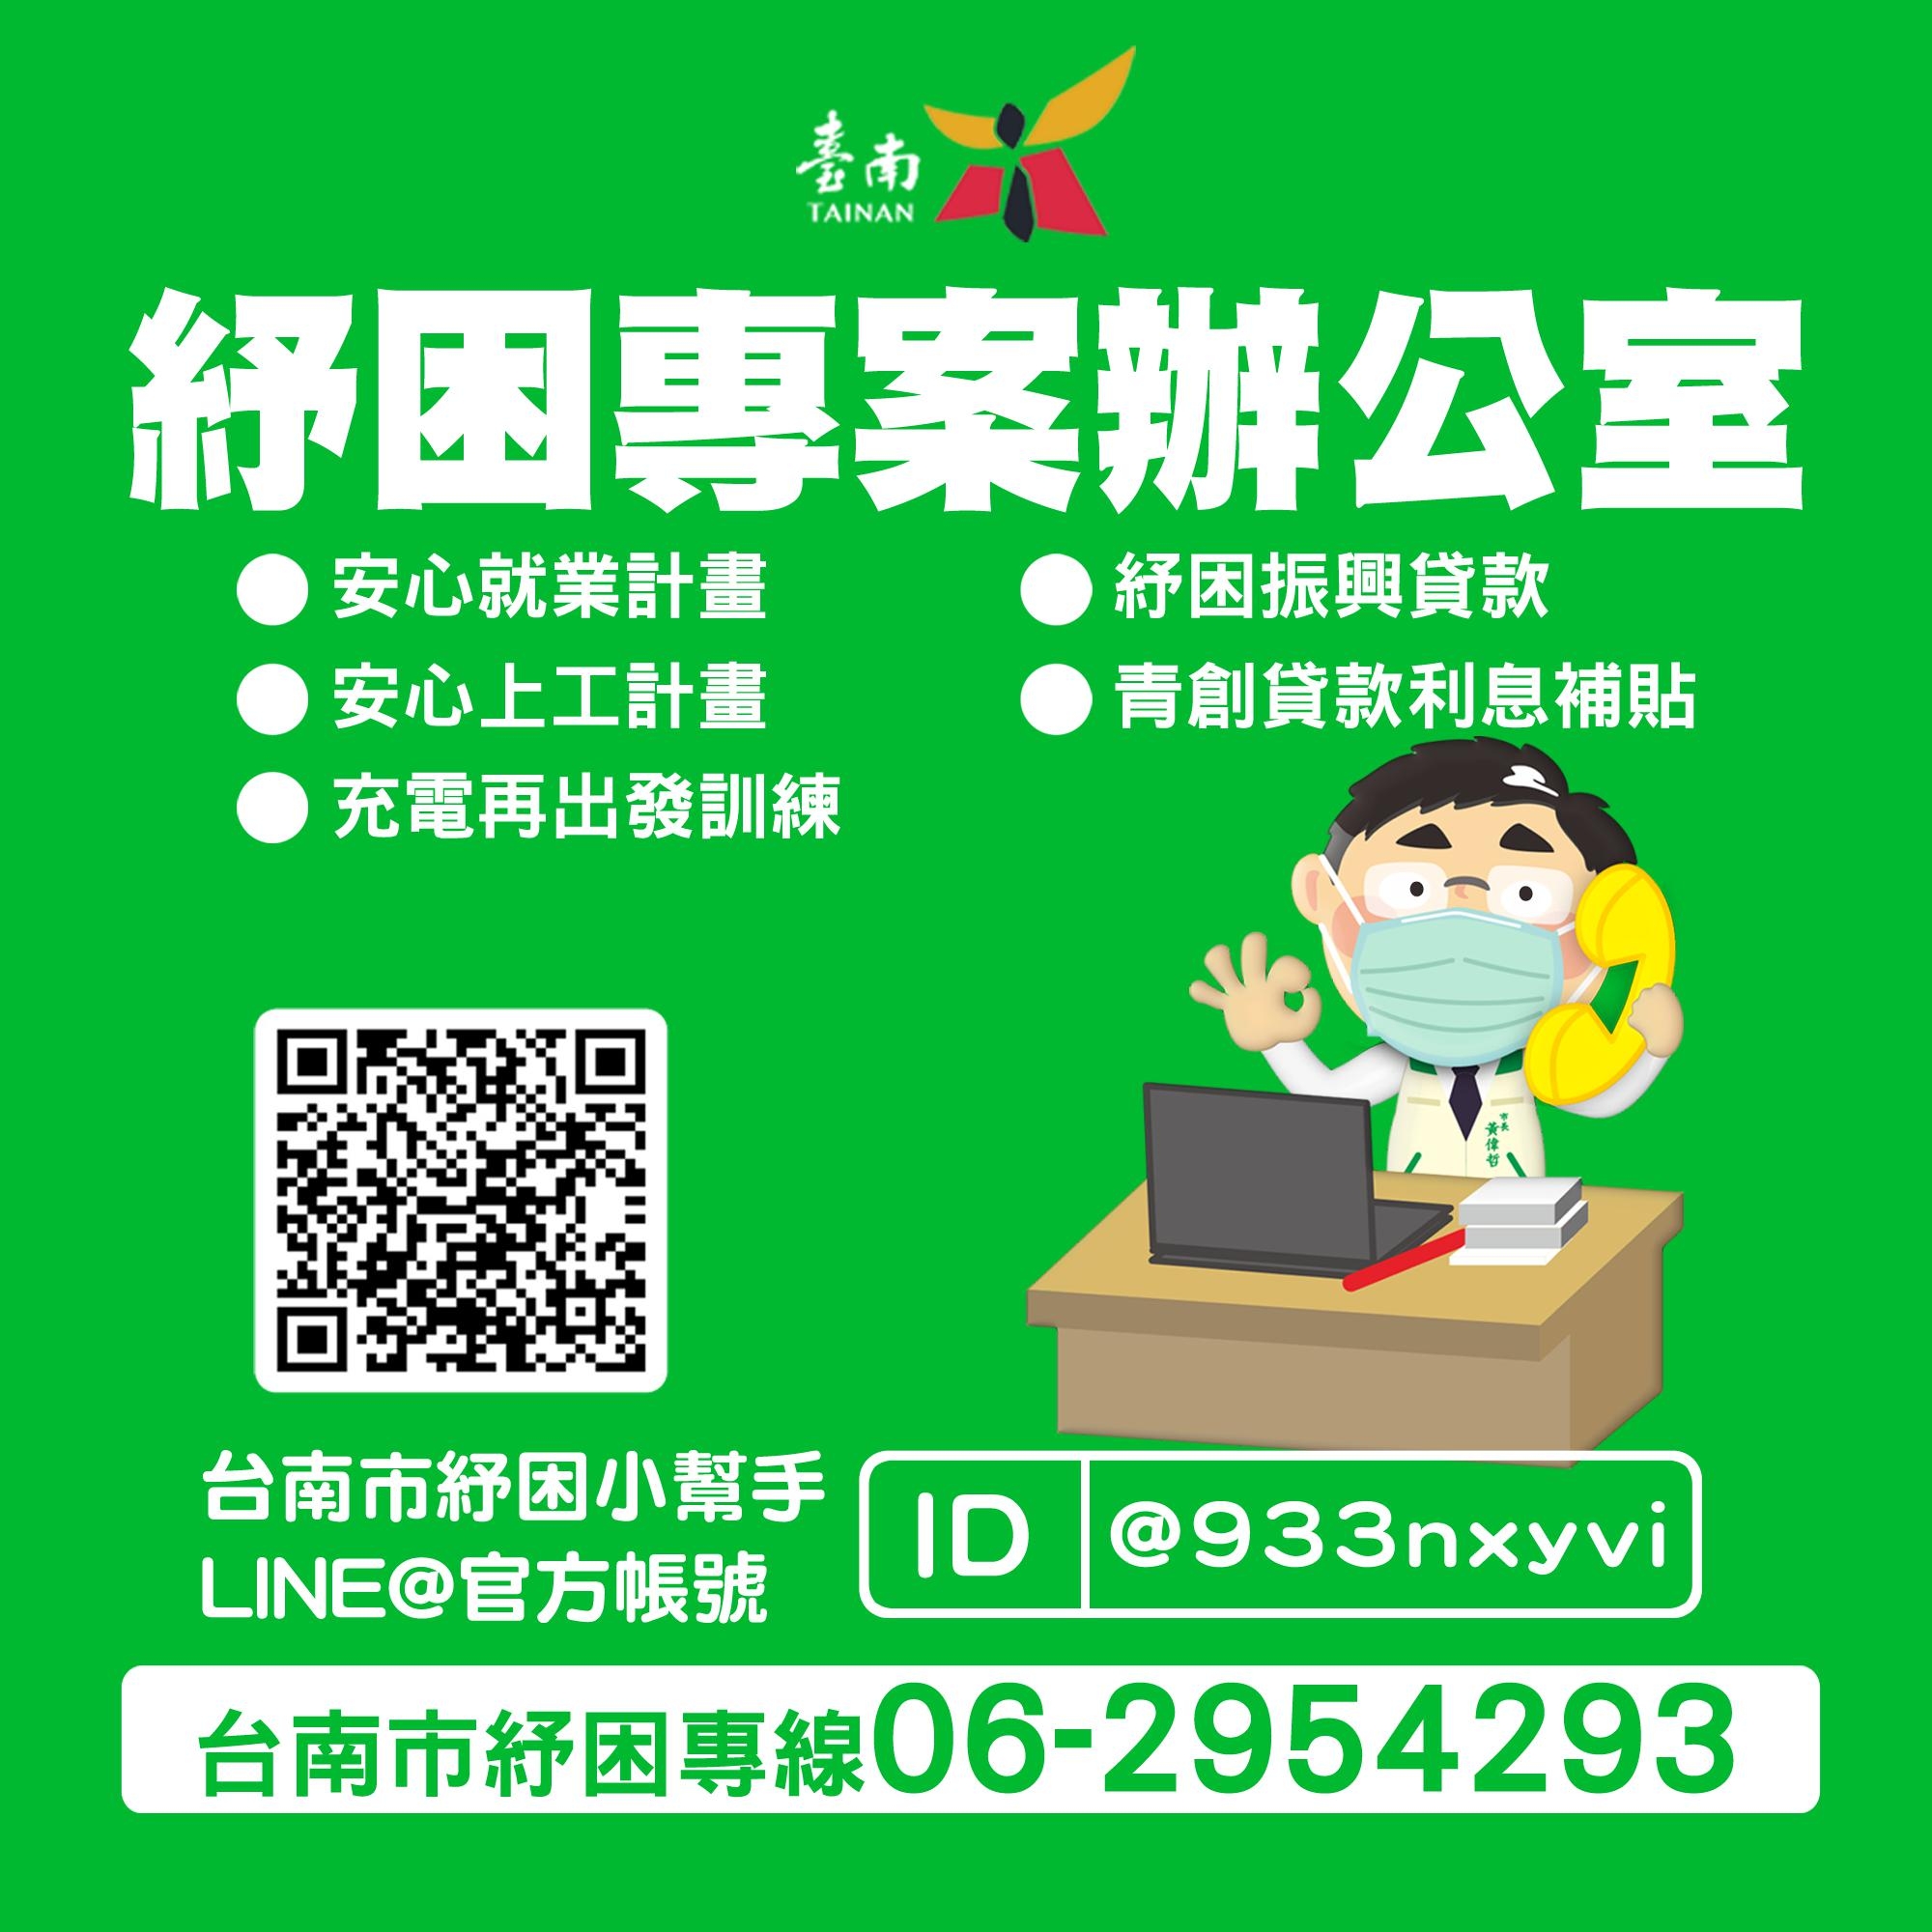 台南市政府防疫紓困與您同在，紓困專線請撥06-2954293。